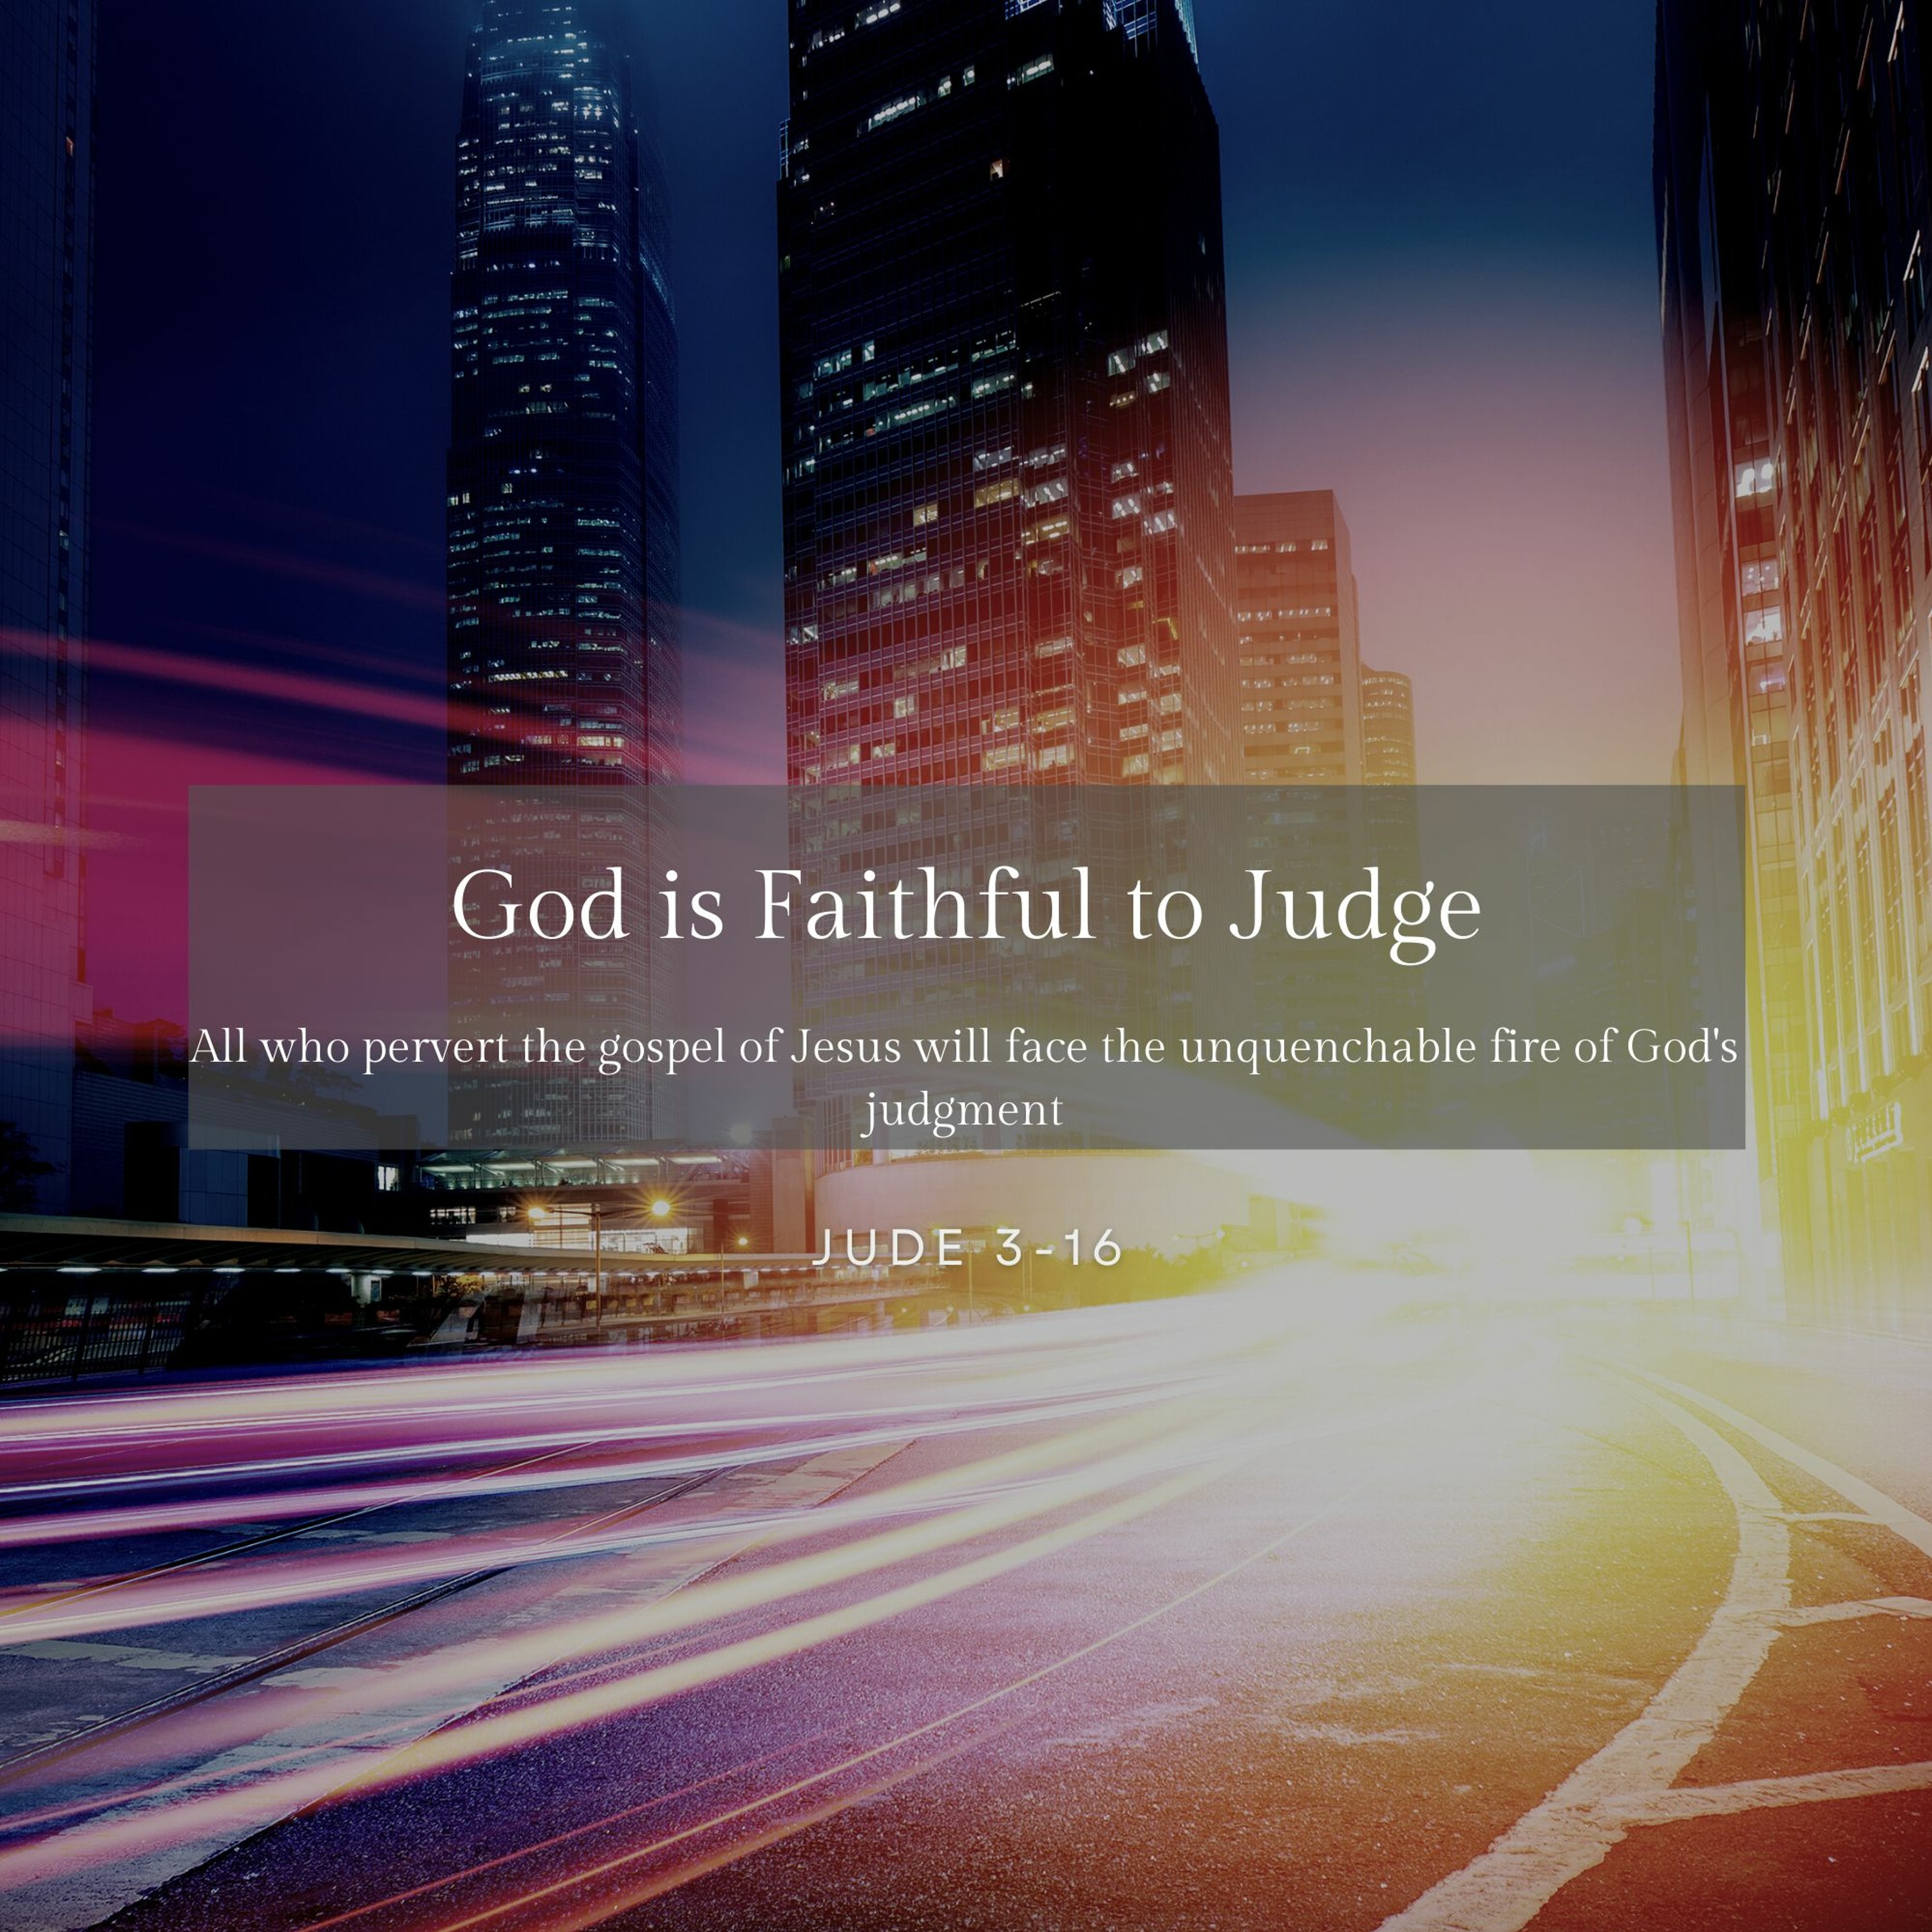 God is Faithful to Judge (Jude 3-16)